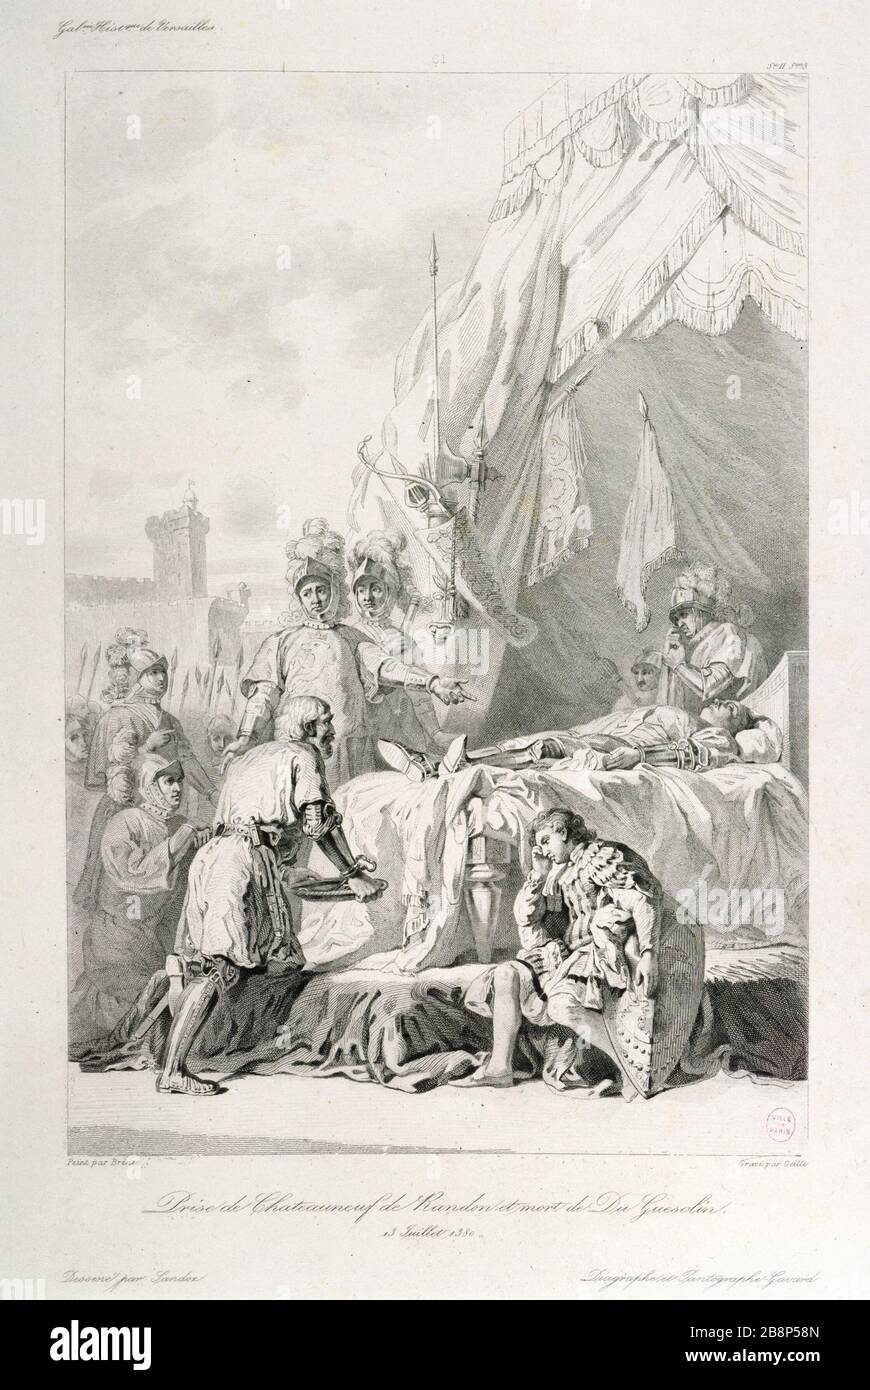 TAKING Chateauneuf-de-Randon AND DEATH OF GUESCLIN (EN 1380) Geille/Sandoz. 'Prise de Châteauneuf de Randon et mort de Du Guesclin (en 1380)'. Estampe. Paris, musée Carnavalet. Stock Photo